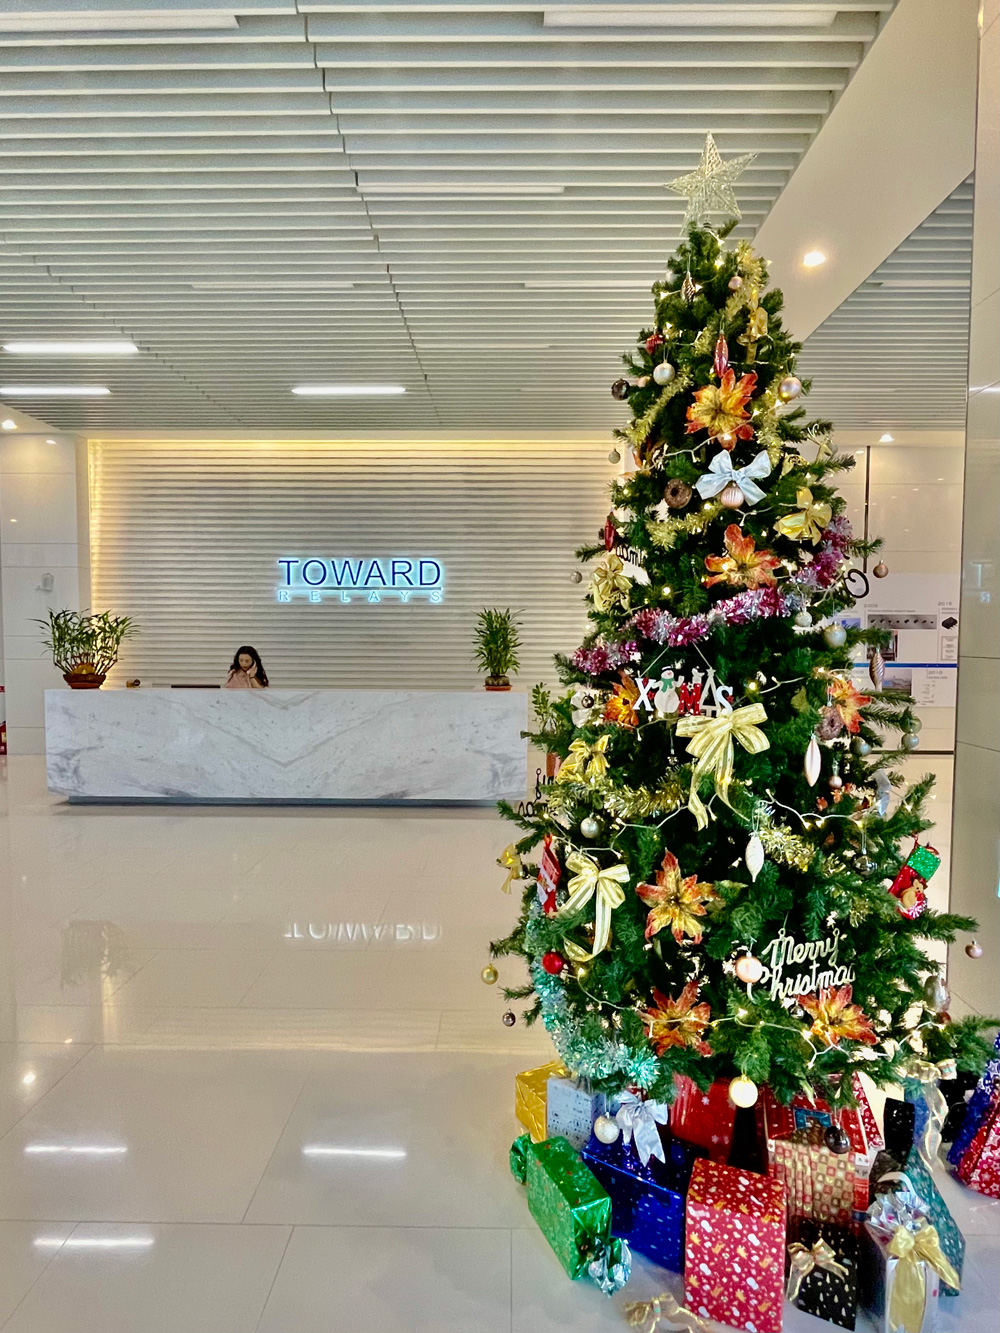 Bright Toward Hsinchu plant’s lobby